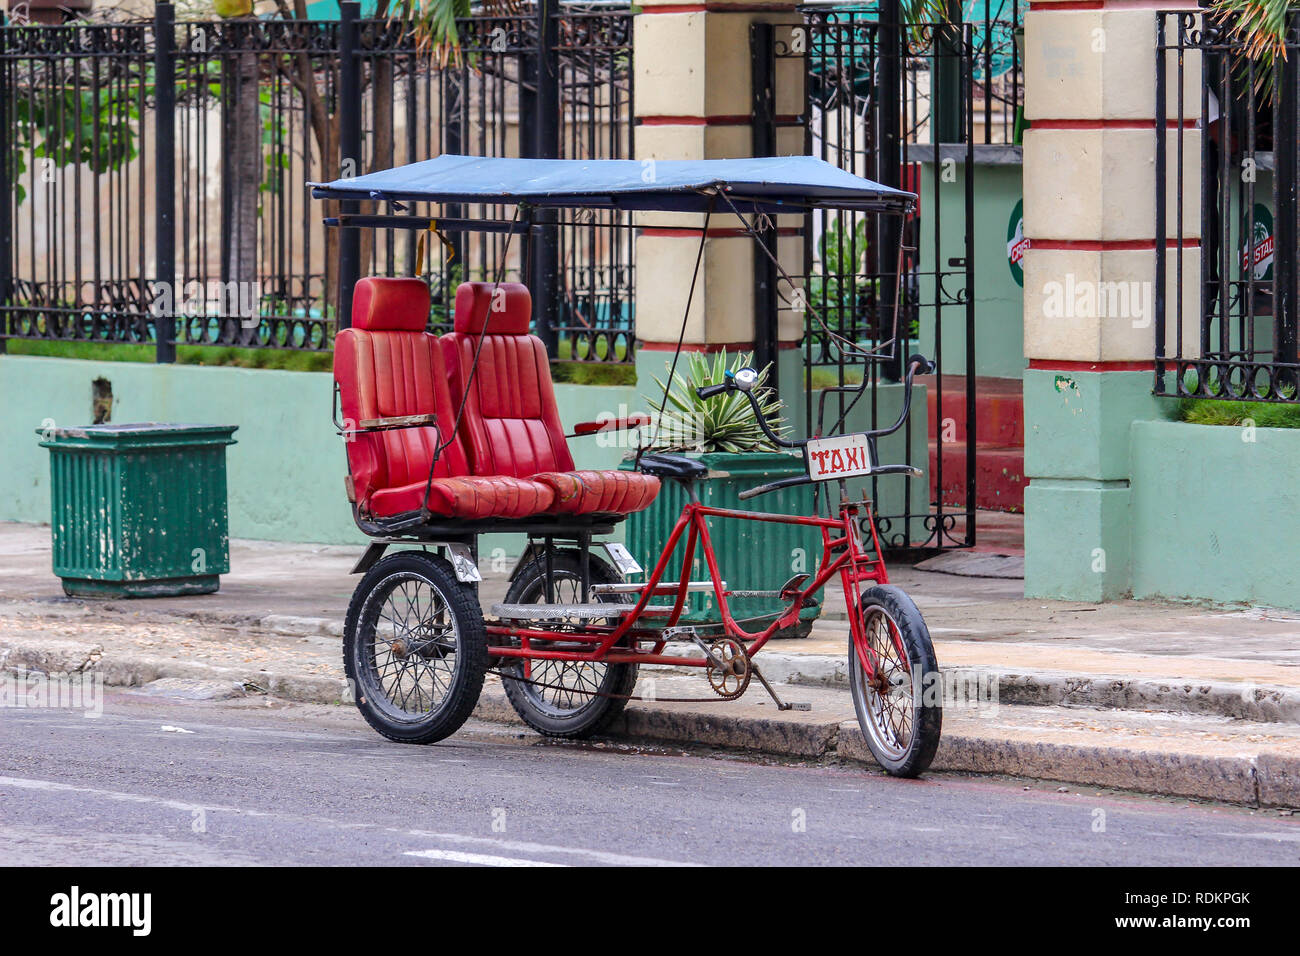 Bici typique taxi, pousse-pousse, Havanna Cuba , Cuba Photo Stock - Alamy